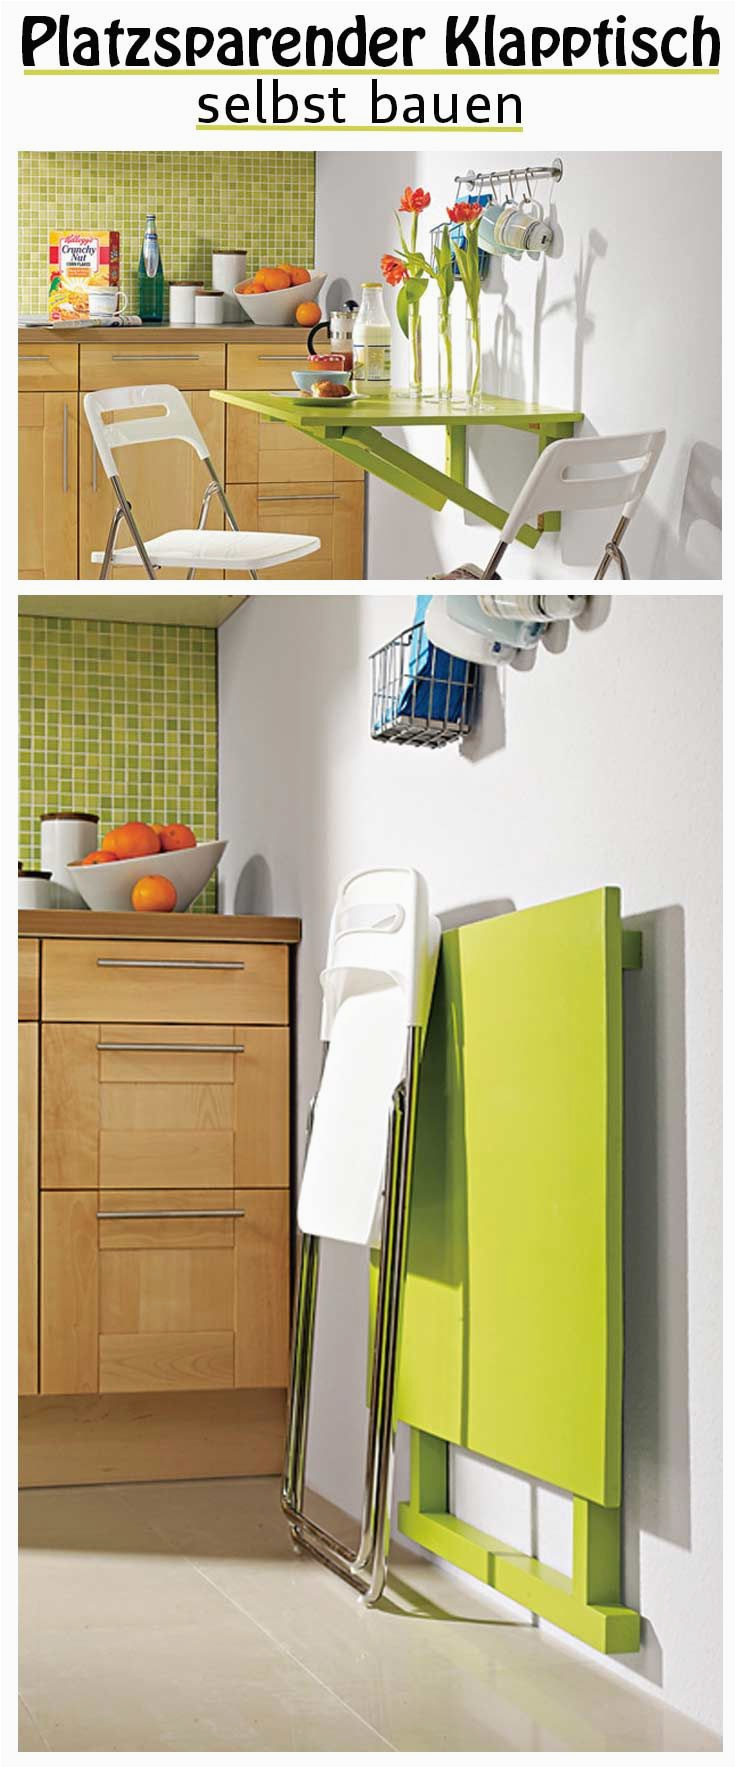 Küchentisch Platzsparend Zusammenlegen 126 Best Images About Möbel & Holz On Pinterest